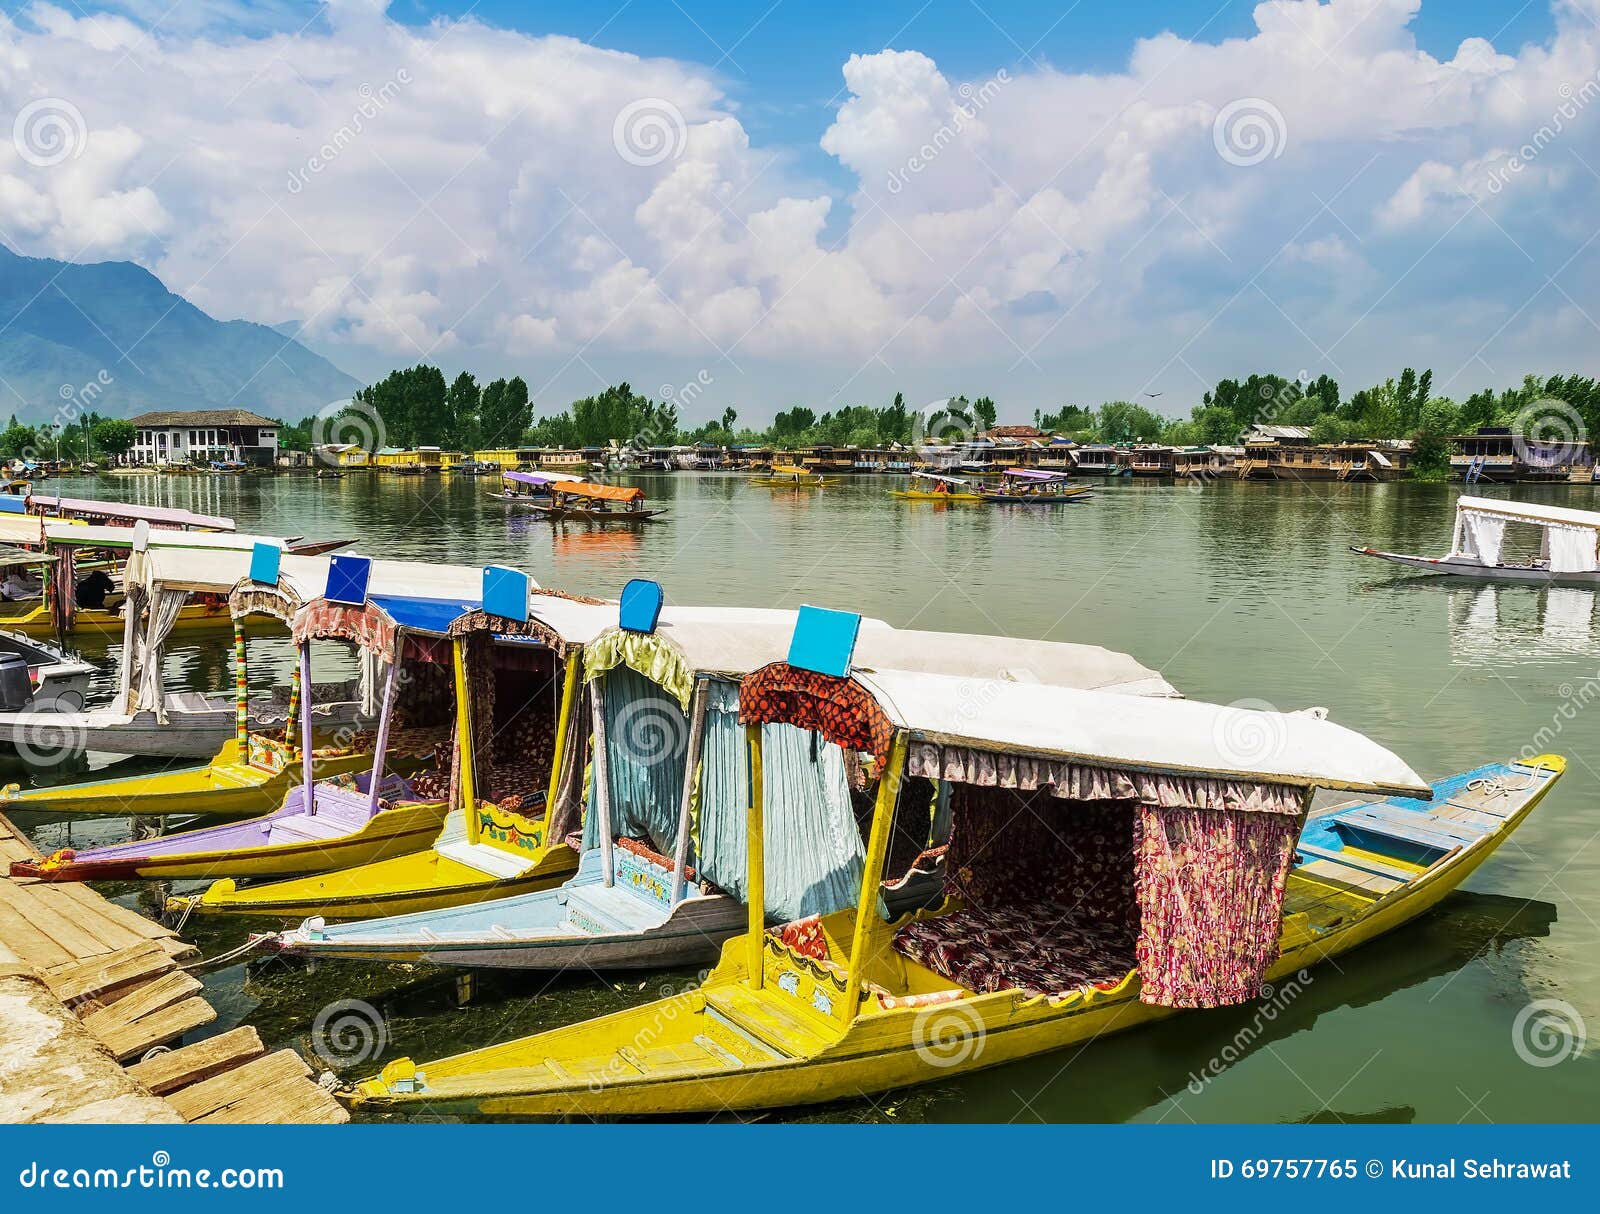 shikara boats / lifestyle in dal lake, srinagar, kashmir, india